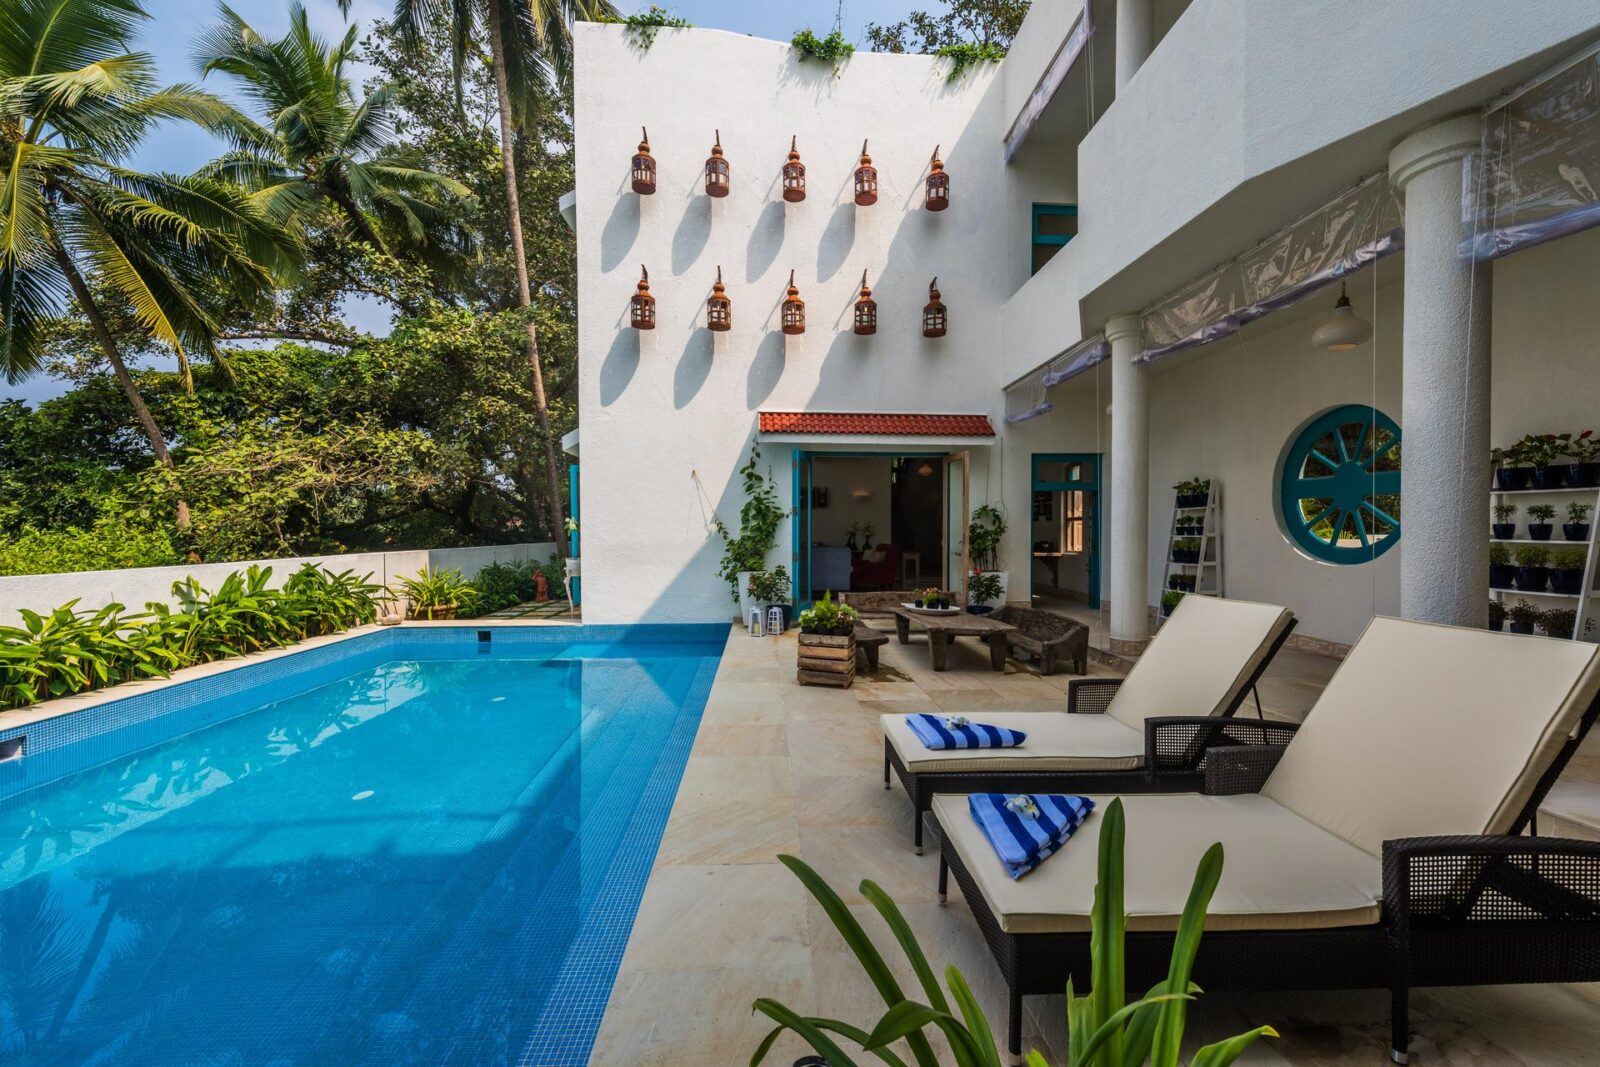 Villa Capela - Luxury Villas for Sale in North Goa - Pool View